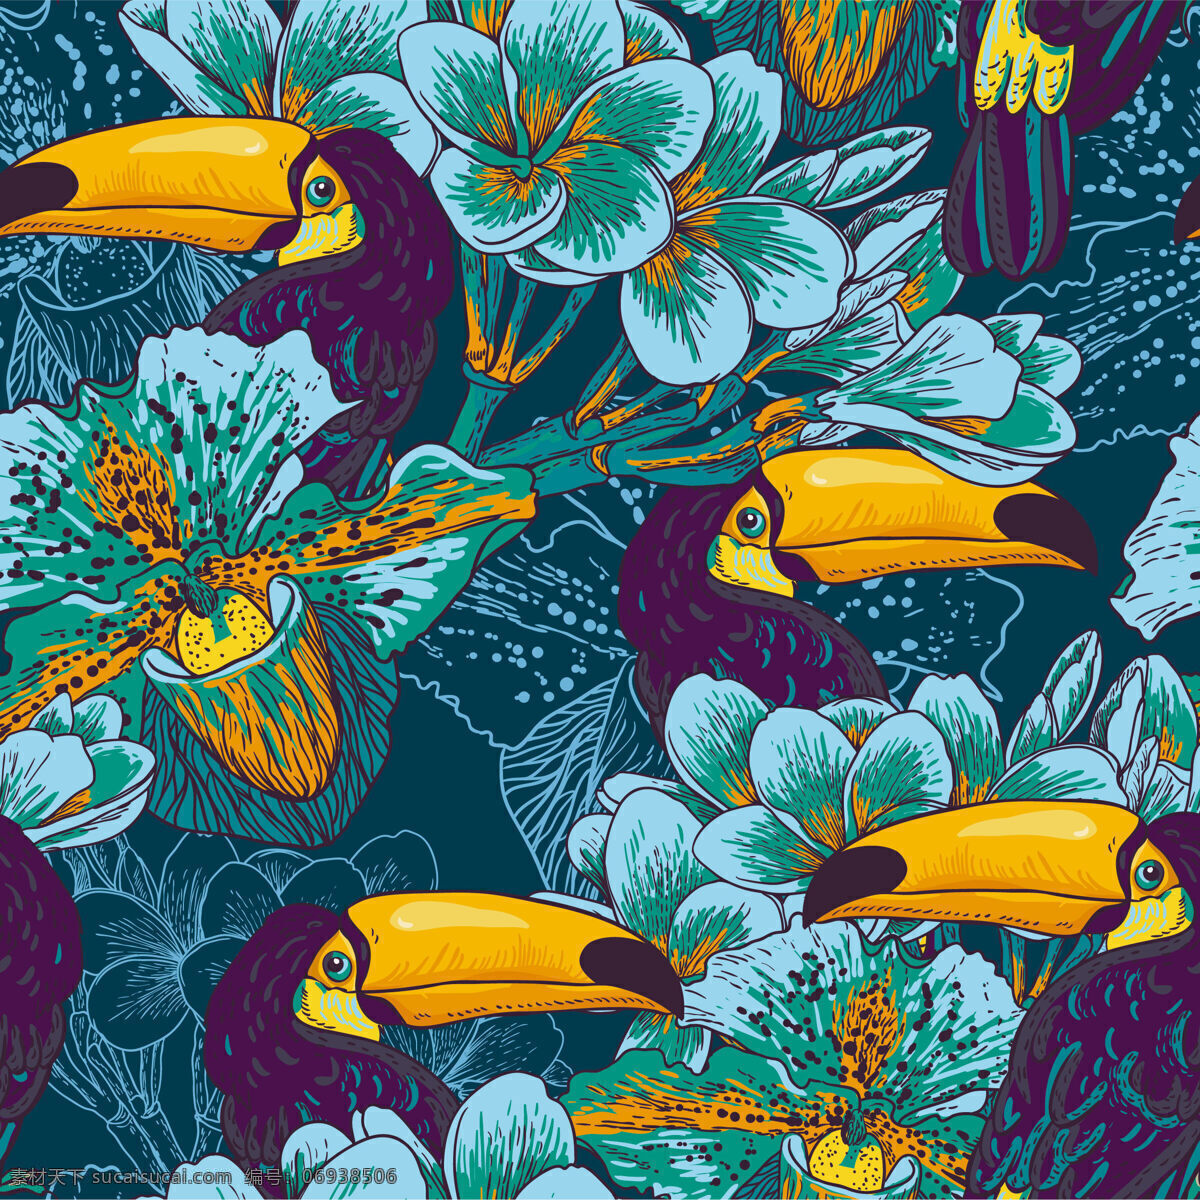 高级 感 深蓝色 底色 啄木鸟 壁纸 图案 装饰设计 壁纸图案 蓝色花朵 装饰时间 黄色花蕊